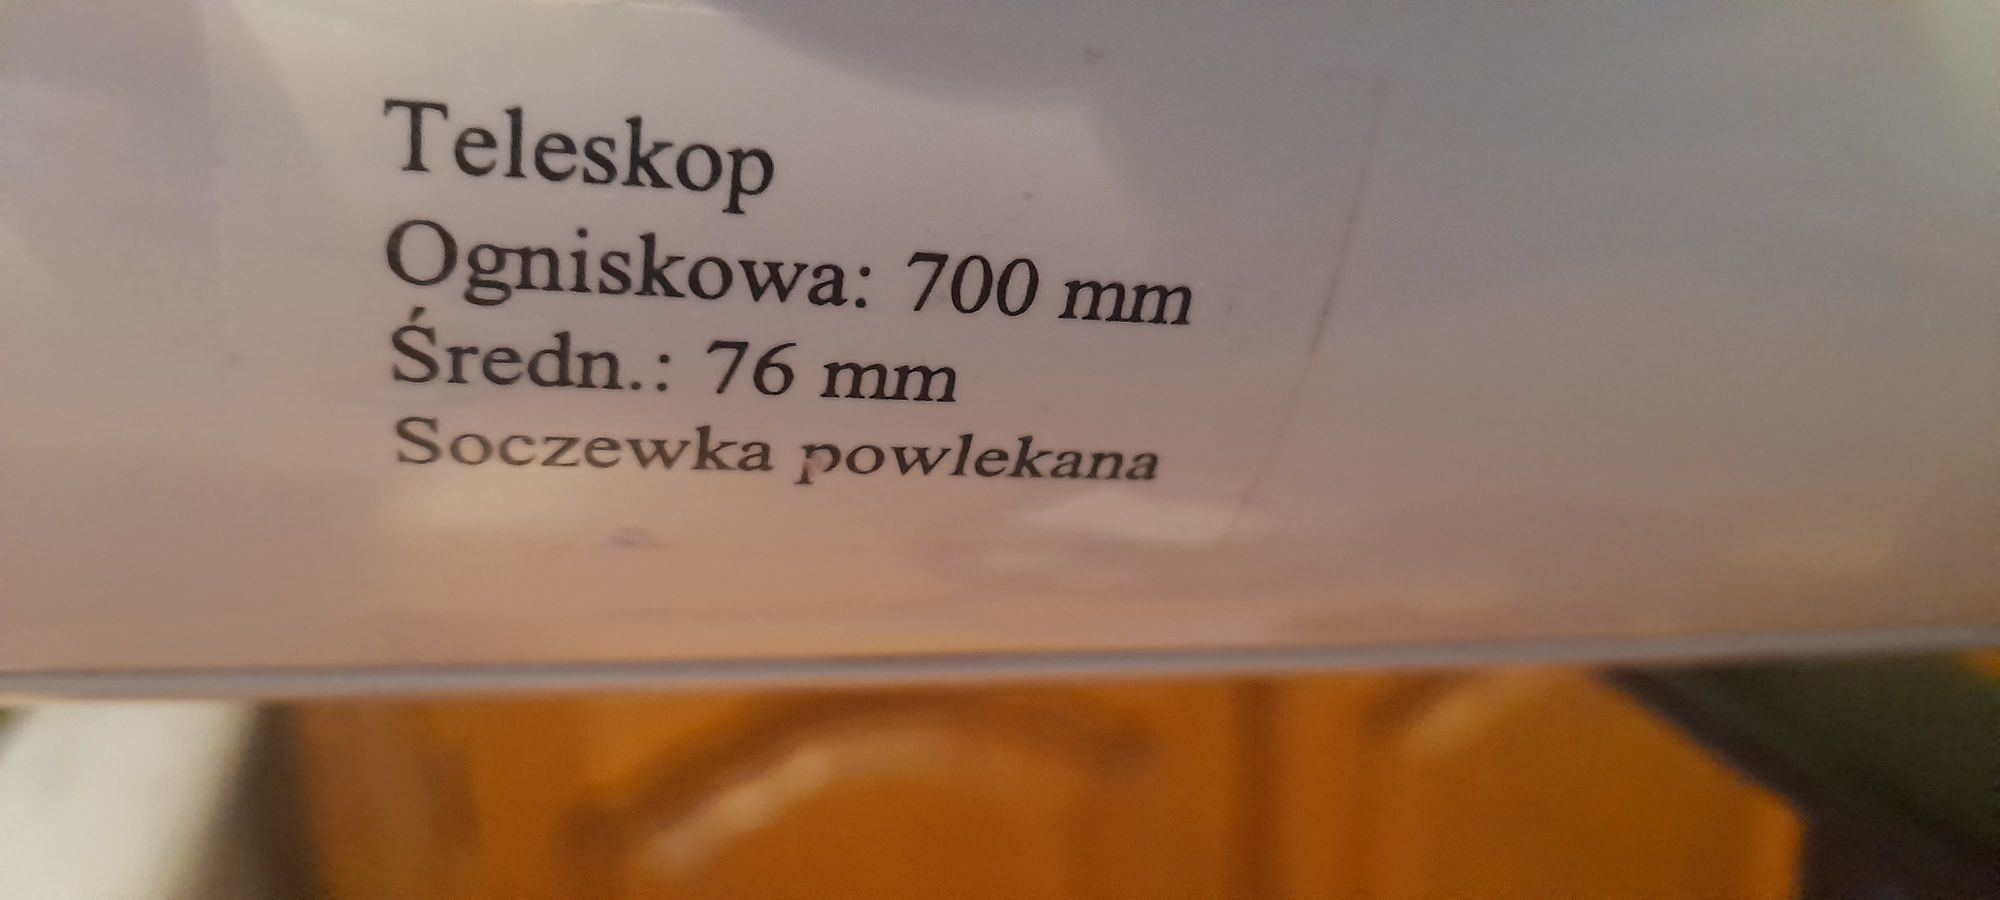 Teleskop astronomiczny luneta 76/700 Polska okular svbony